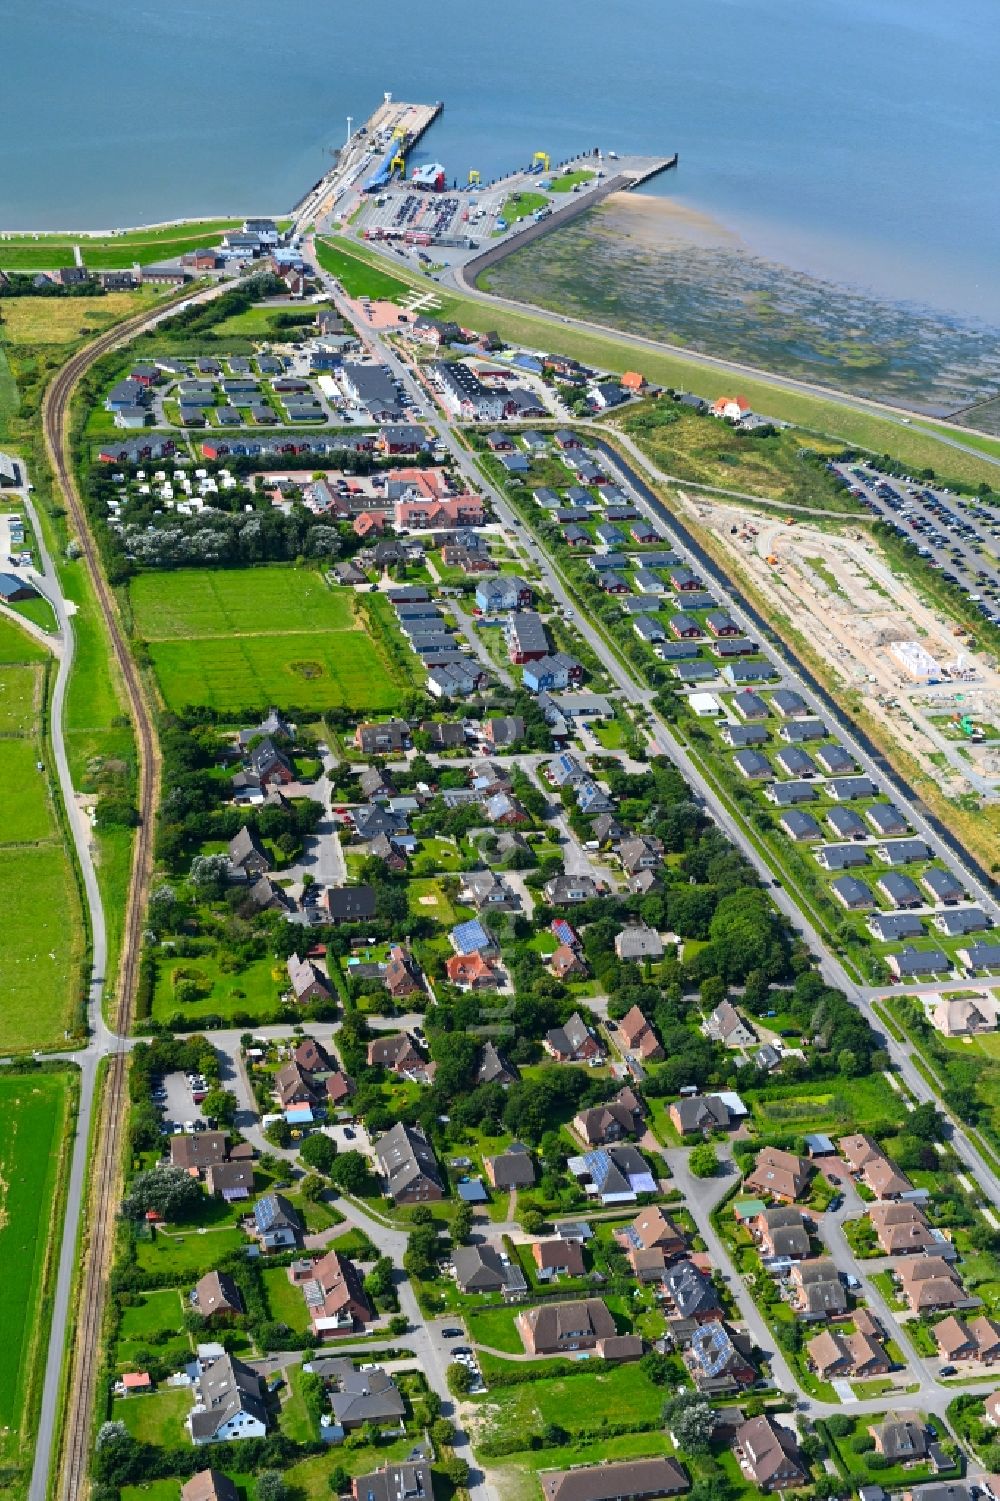 Luftaufnahme Dagebüll - Stadtansicht am Küstenbereich der Nordsee in Dagebüll im Bundesland Schleswig-Holstein, Deutschland